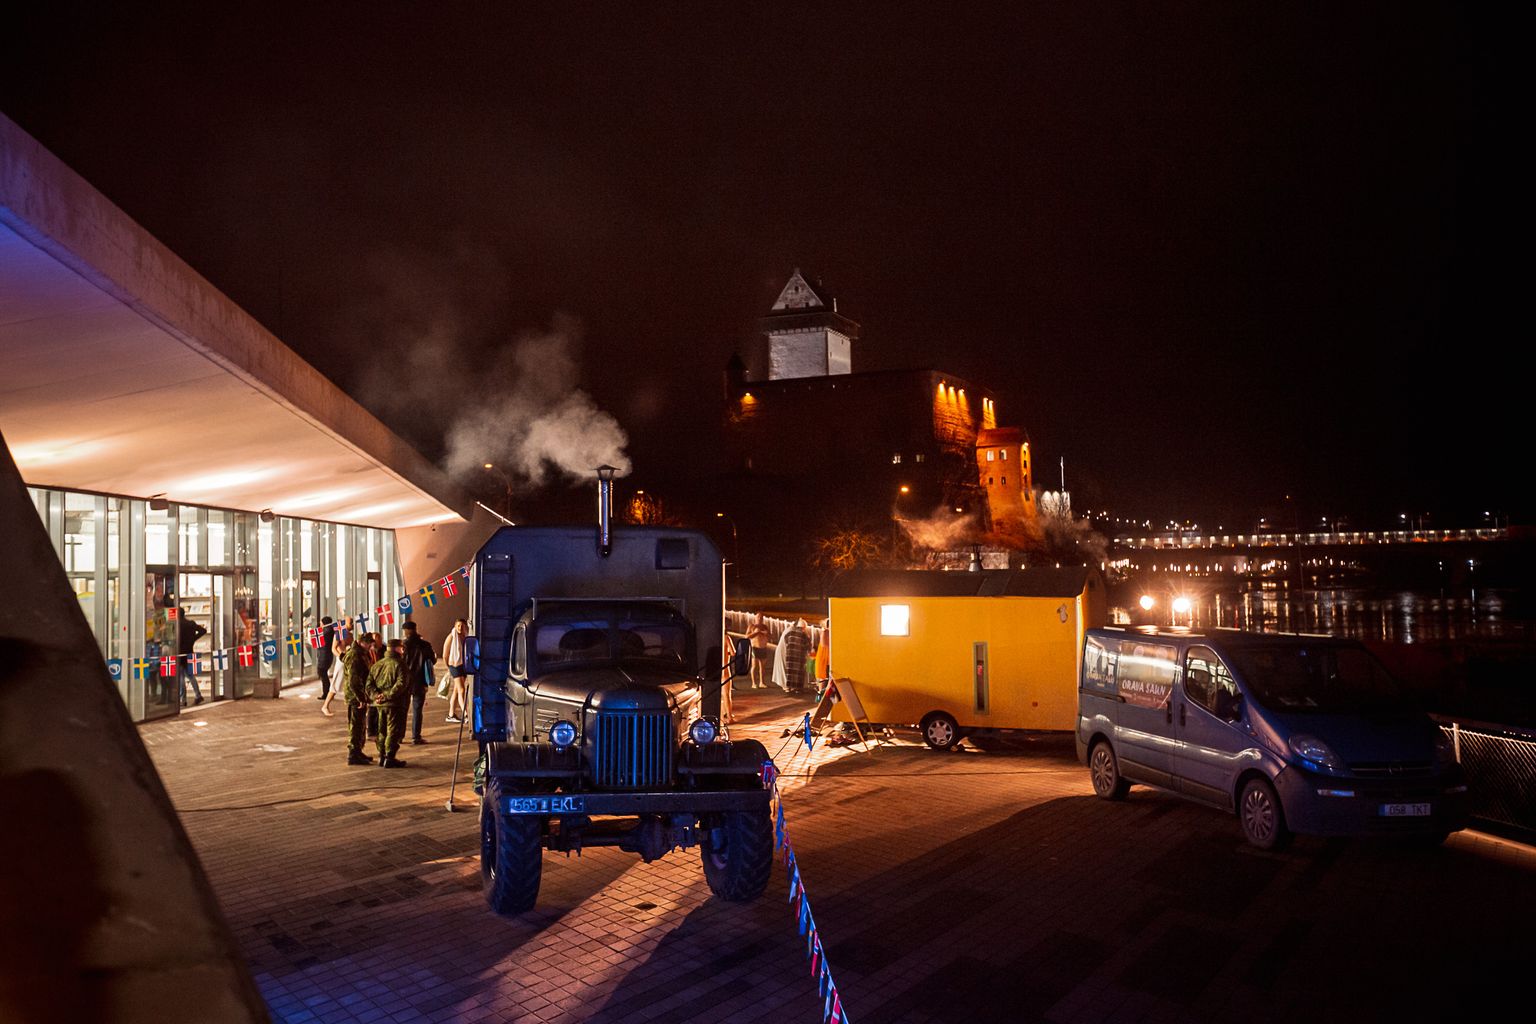 Narva jõe kaldal on saunapidu peetud varemgi, näiteks 2018. aasta Põhjamaade nädalal. Eesti saunakultuuri päevad toovad Joaoru randa vähemalt 20 mobiilset sauna.